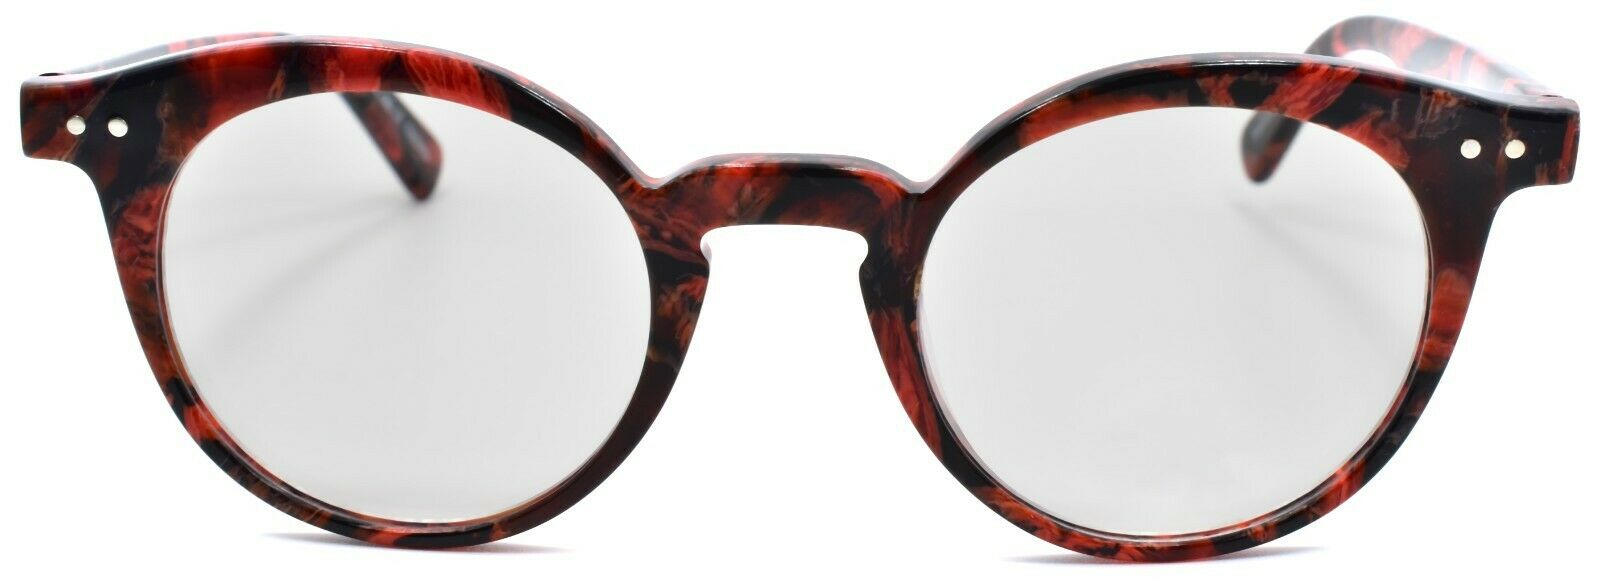 2-Eyebobs Reva 2747 01 Women's Reading Glasses Red Black Marble +2.25-842754161060-IKSpecs